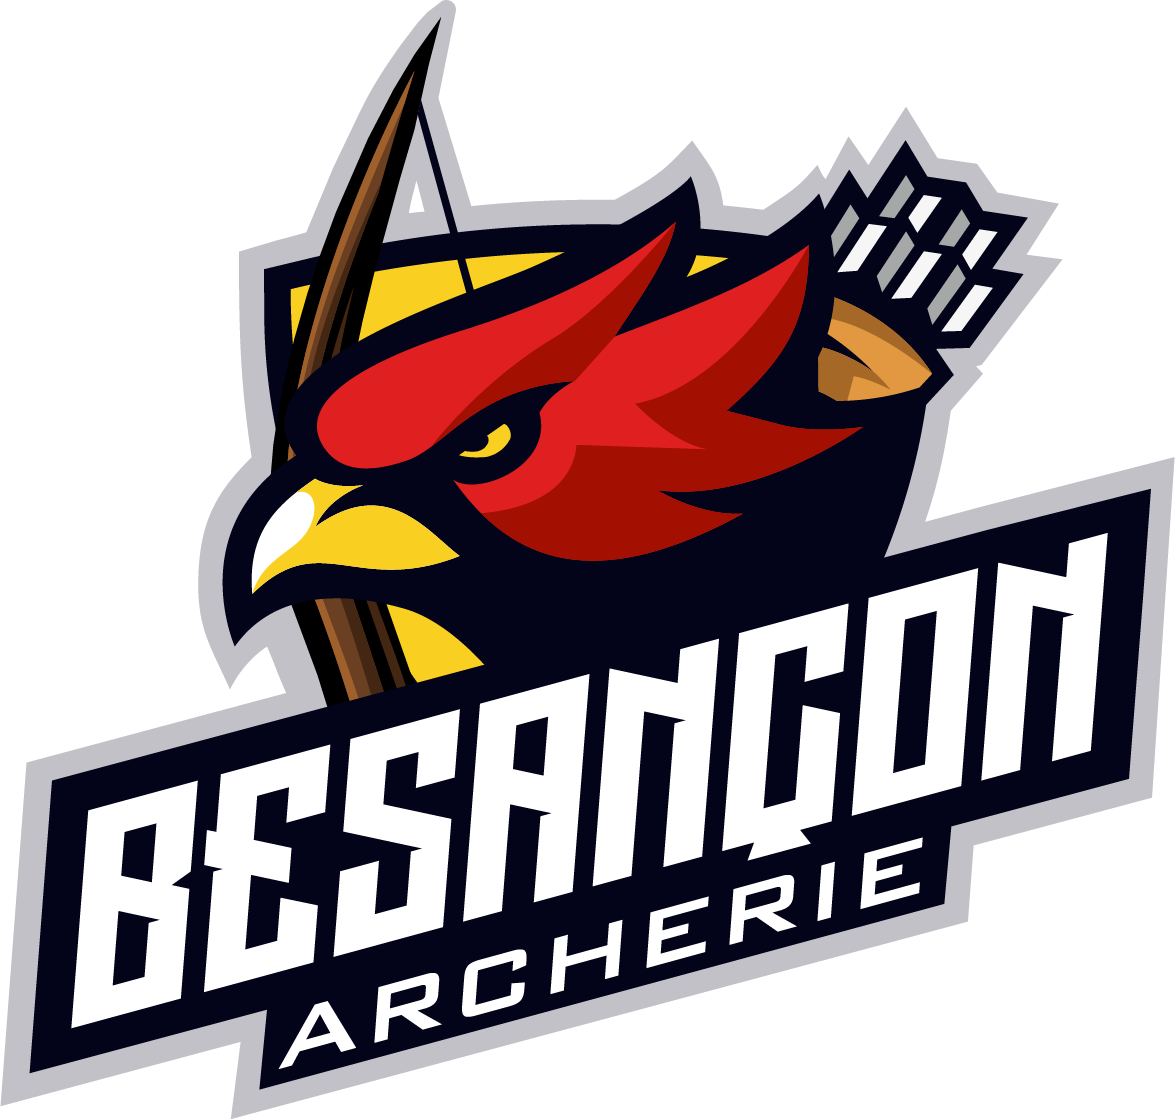 Besançon Archerie